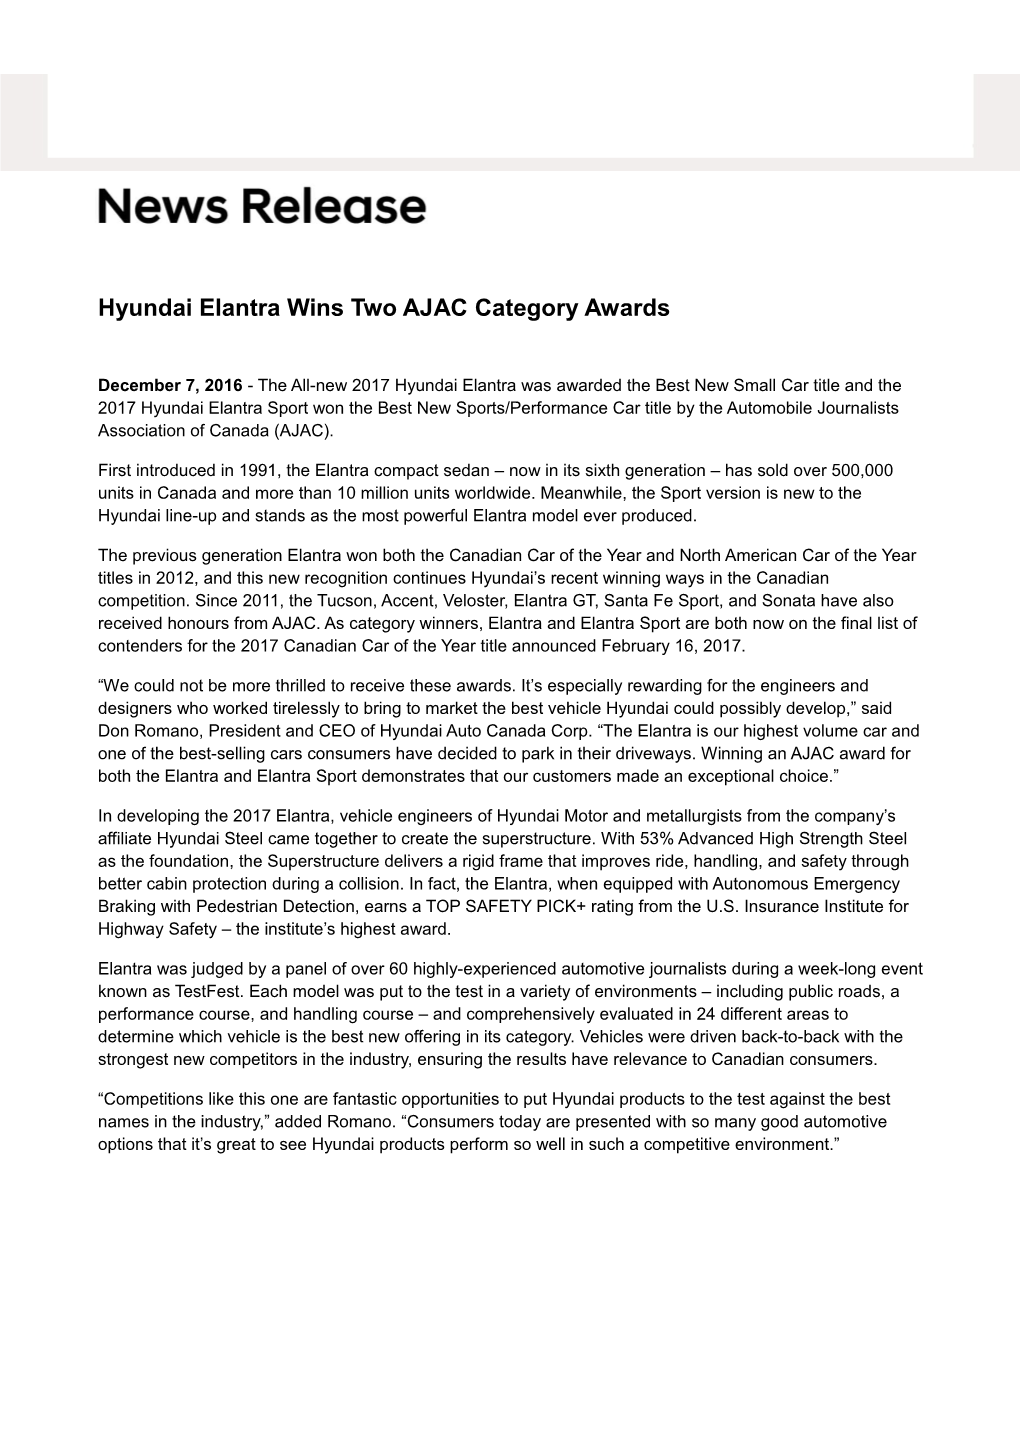 Hyundai Elantra Wins Two AJAC Category Awards